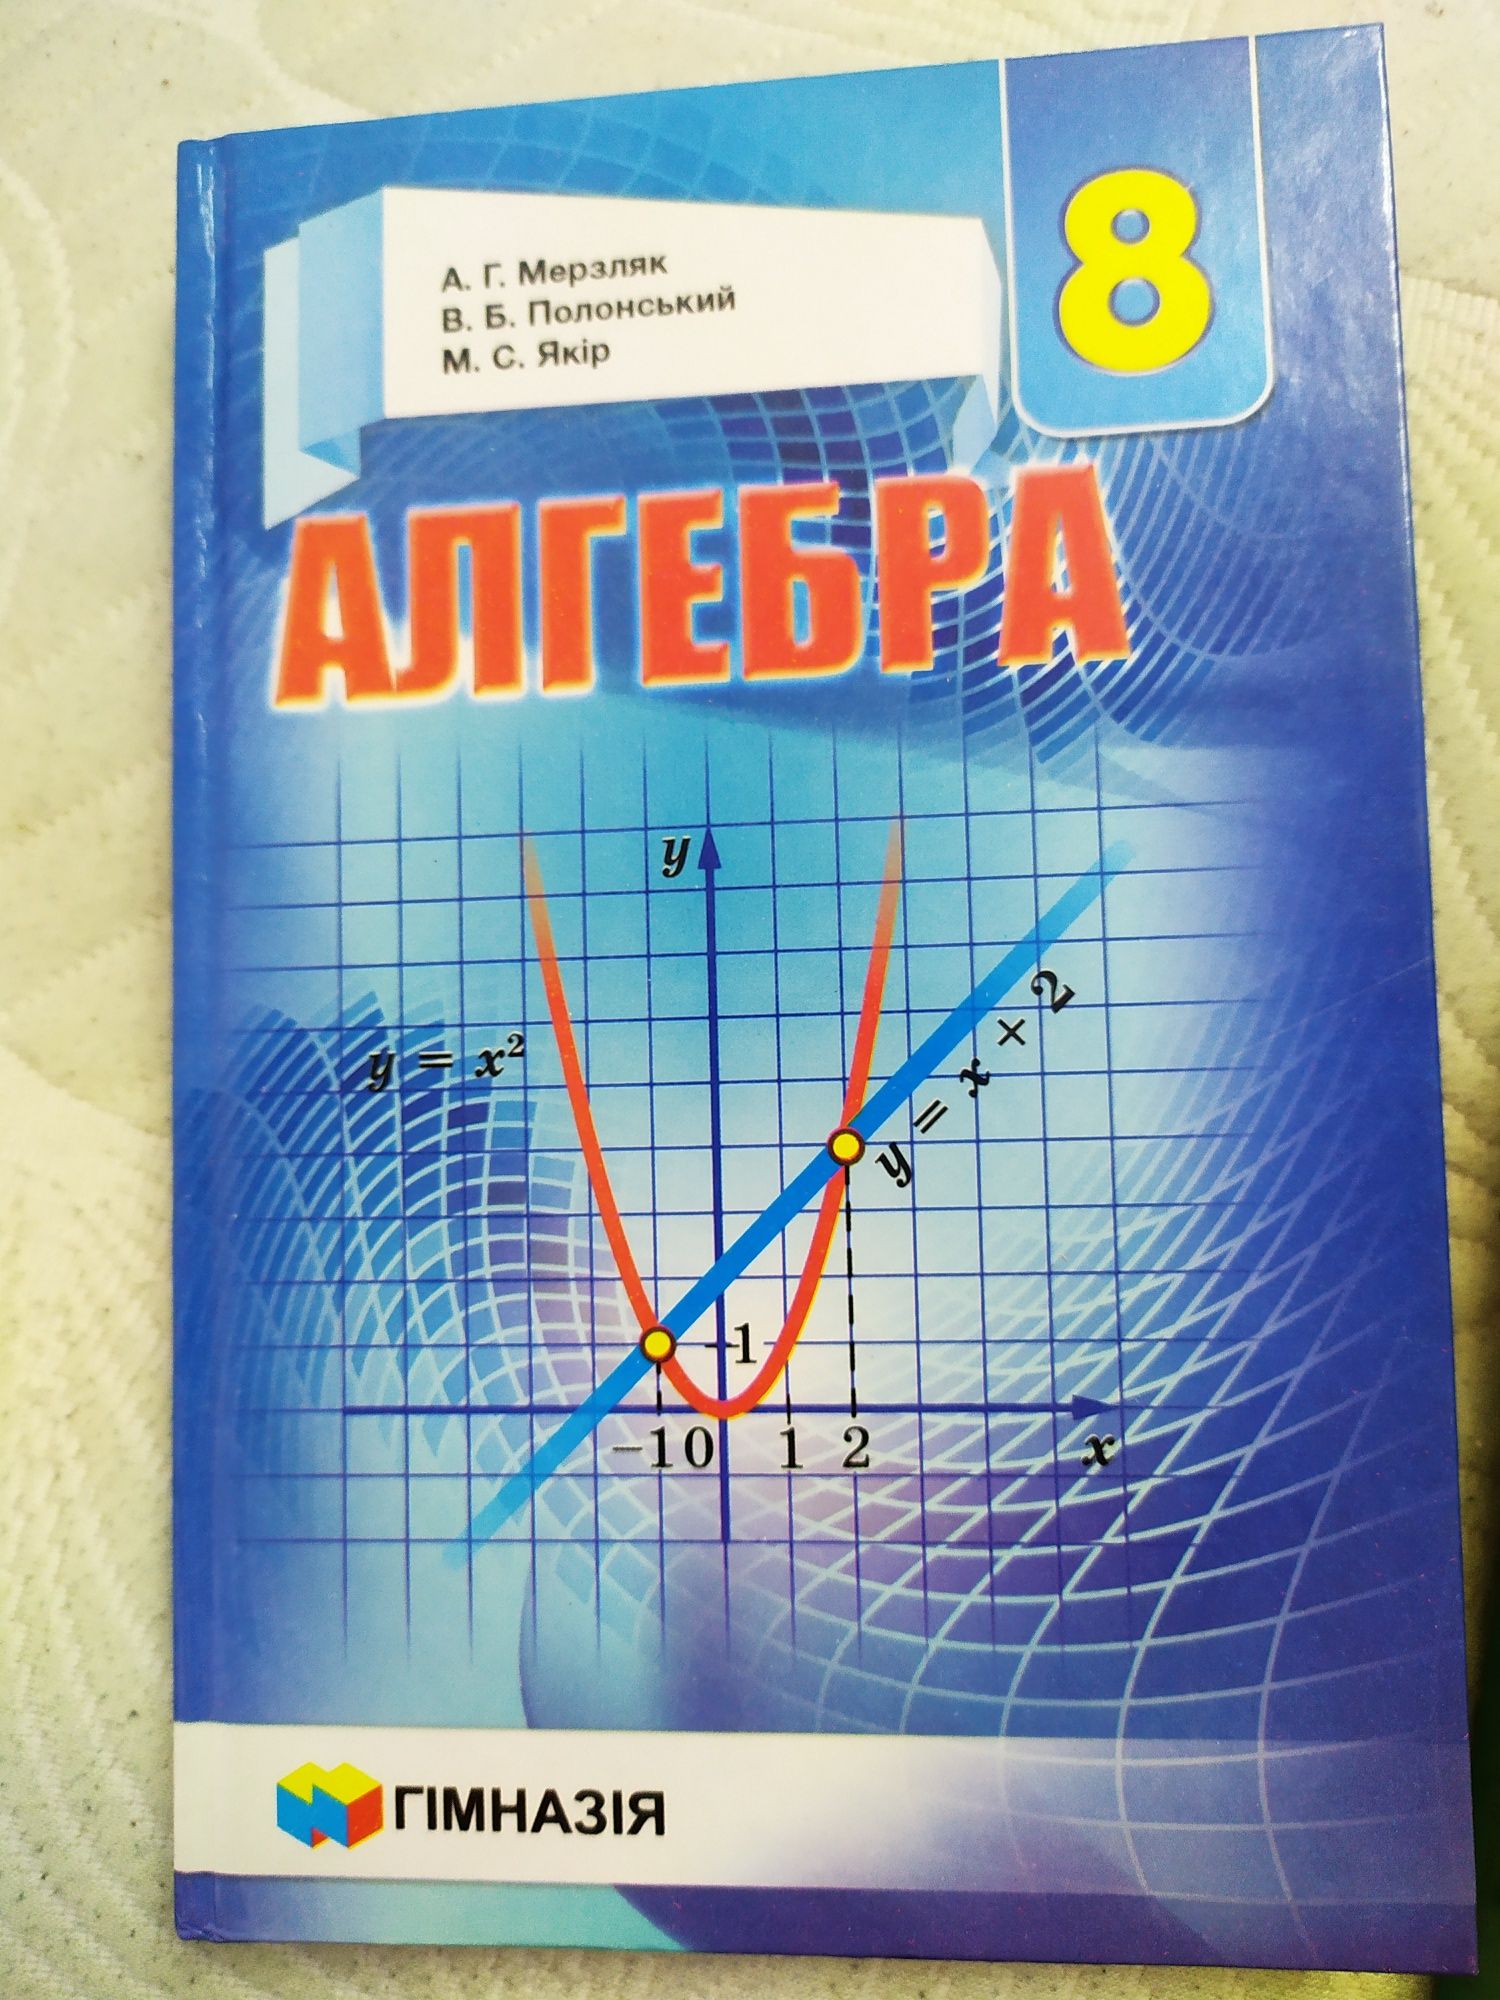 Алгебра, Геометрія підручники 8 клас (Мерзляк) НОВІ